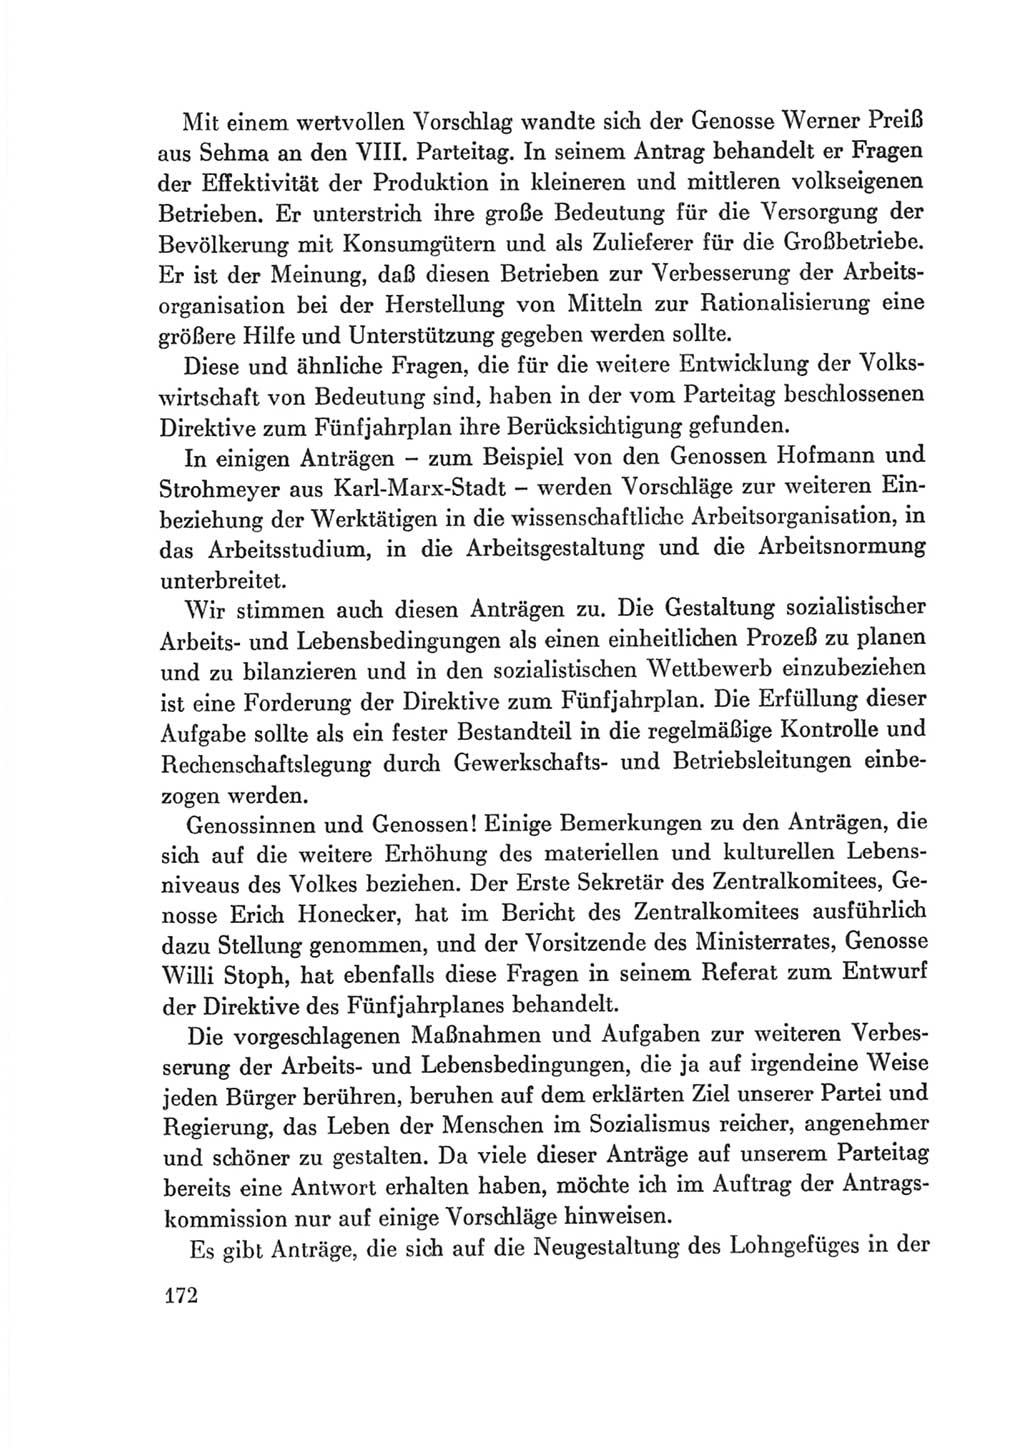 Protokoll der Verhandlungen des Ⅷ. Parteitages der Sozialistischen Einheitspartei Deutschlands (SED) [Deutsche Demokratische Republik (DDR)] 1971, Band 2, Seite 172 (Prot. Verh. Ⅷ. PT SED DDR 1971, Bd. 2, S. 172)